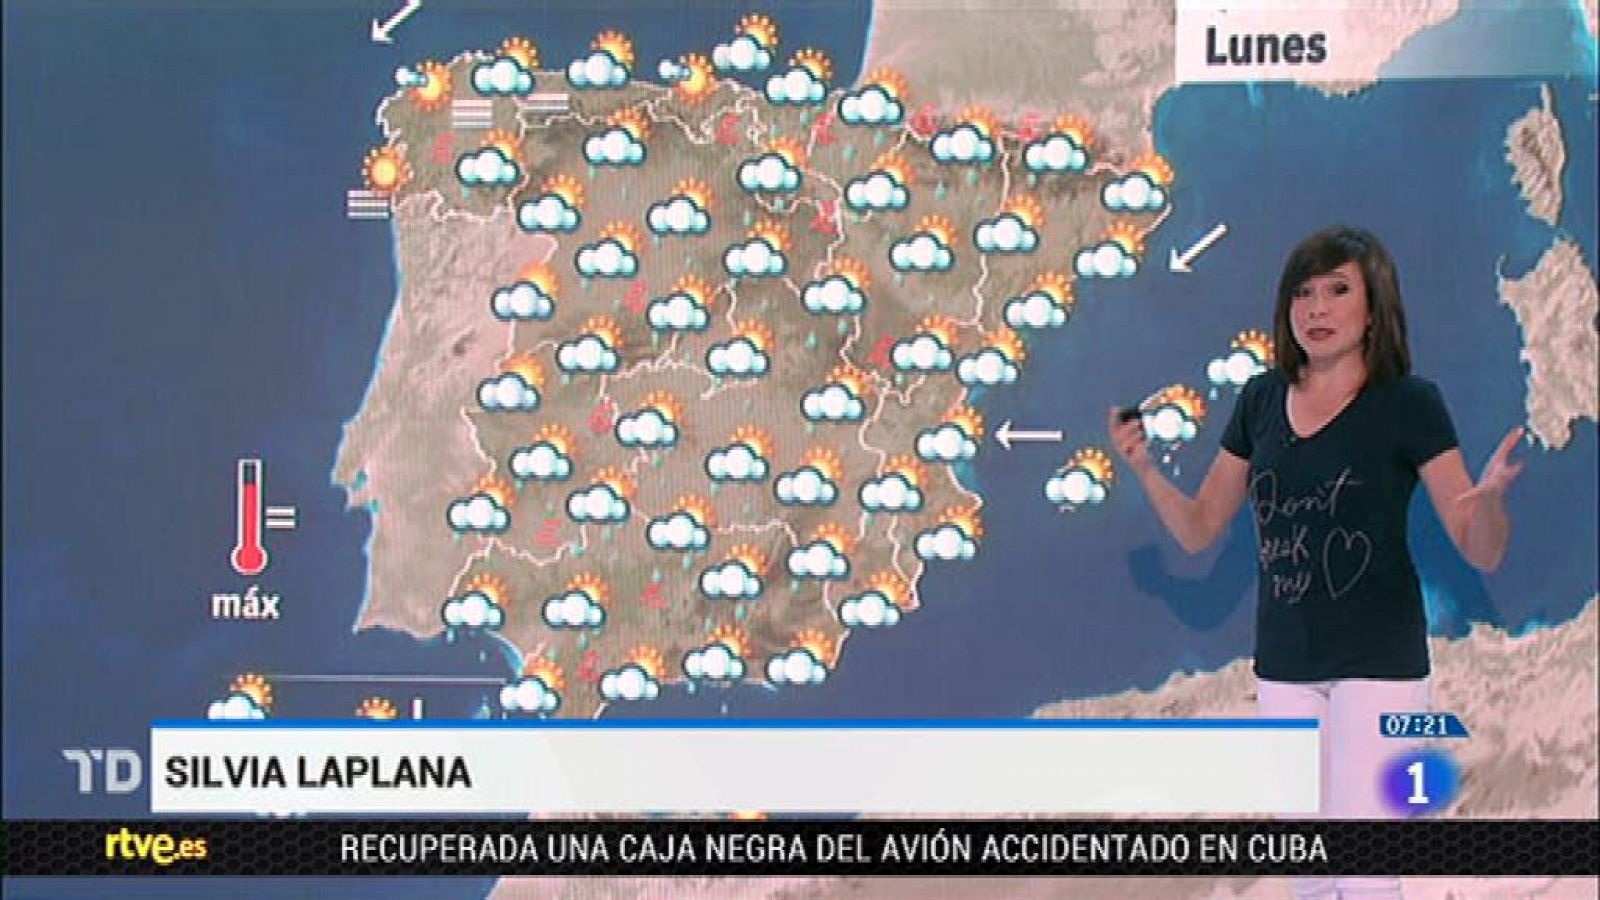 El Tiempo | Este lunes habrá lluvias y tormentas en el sur peninsular, Vizcaya, Navarra y Aragón